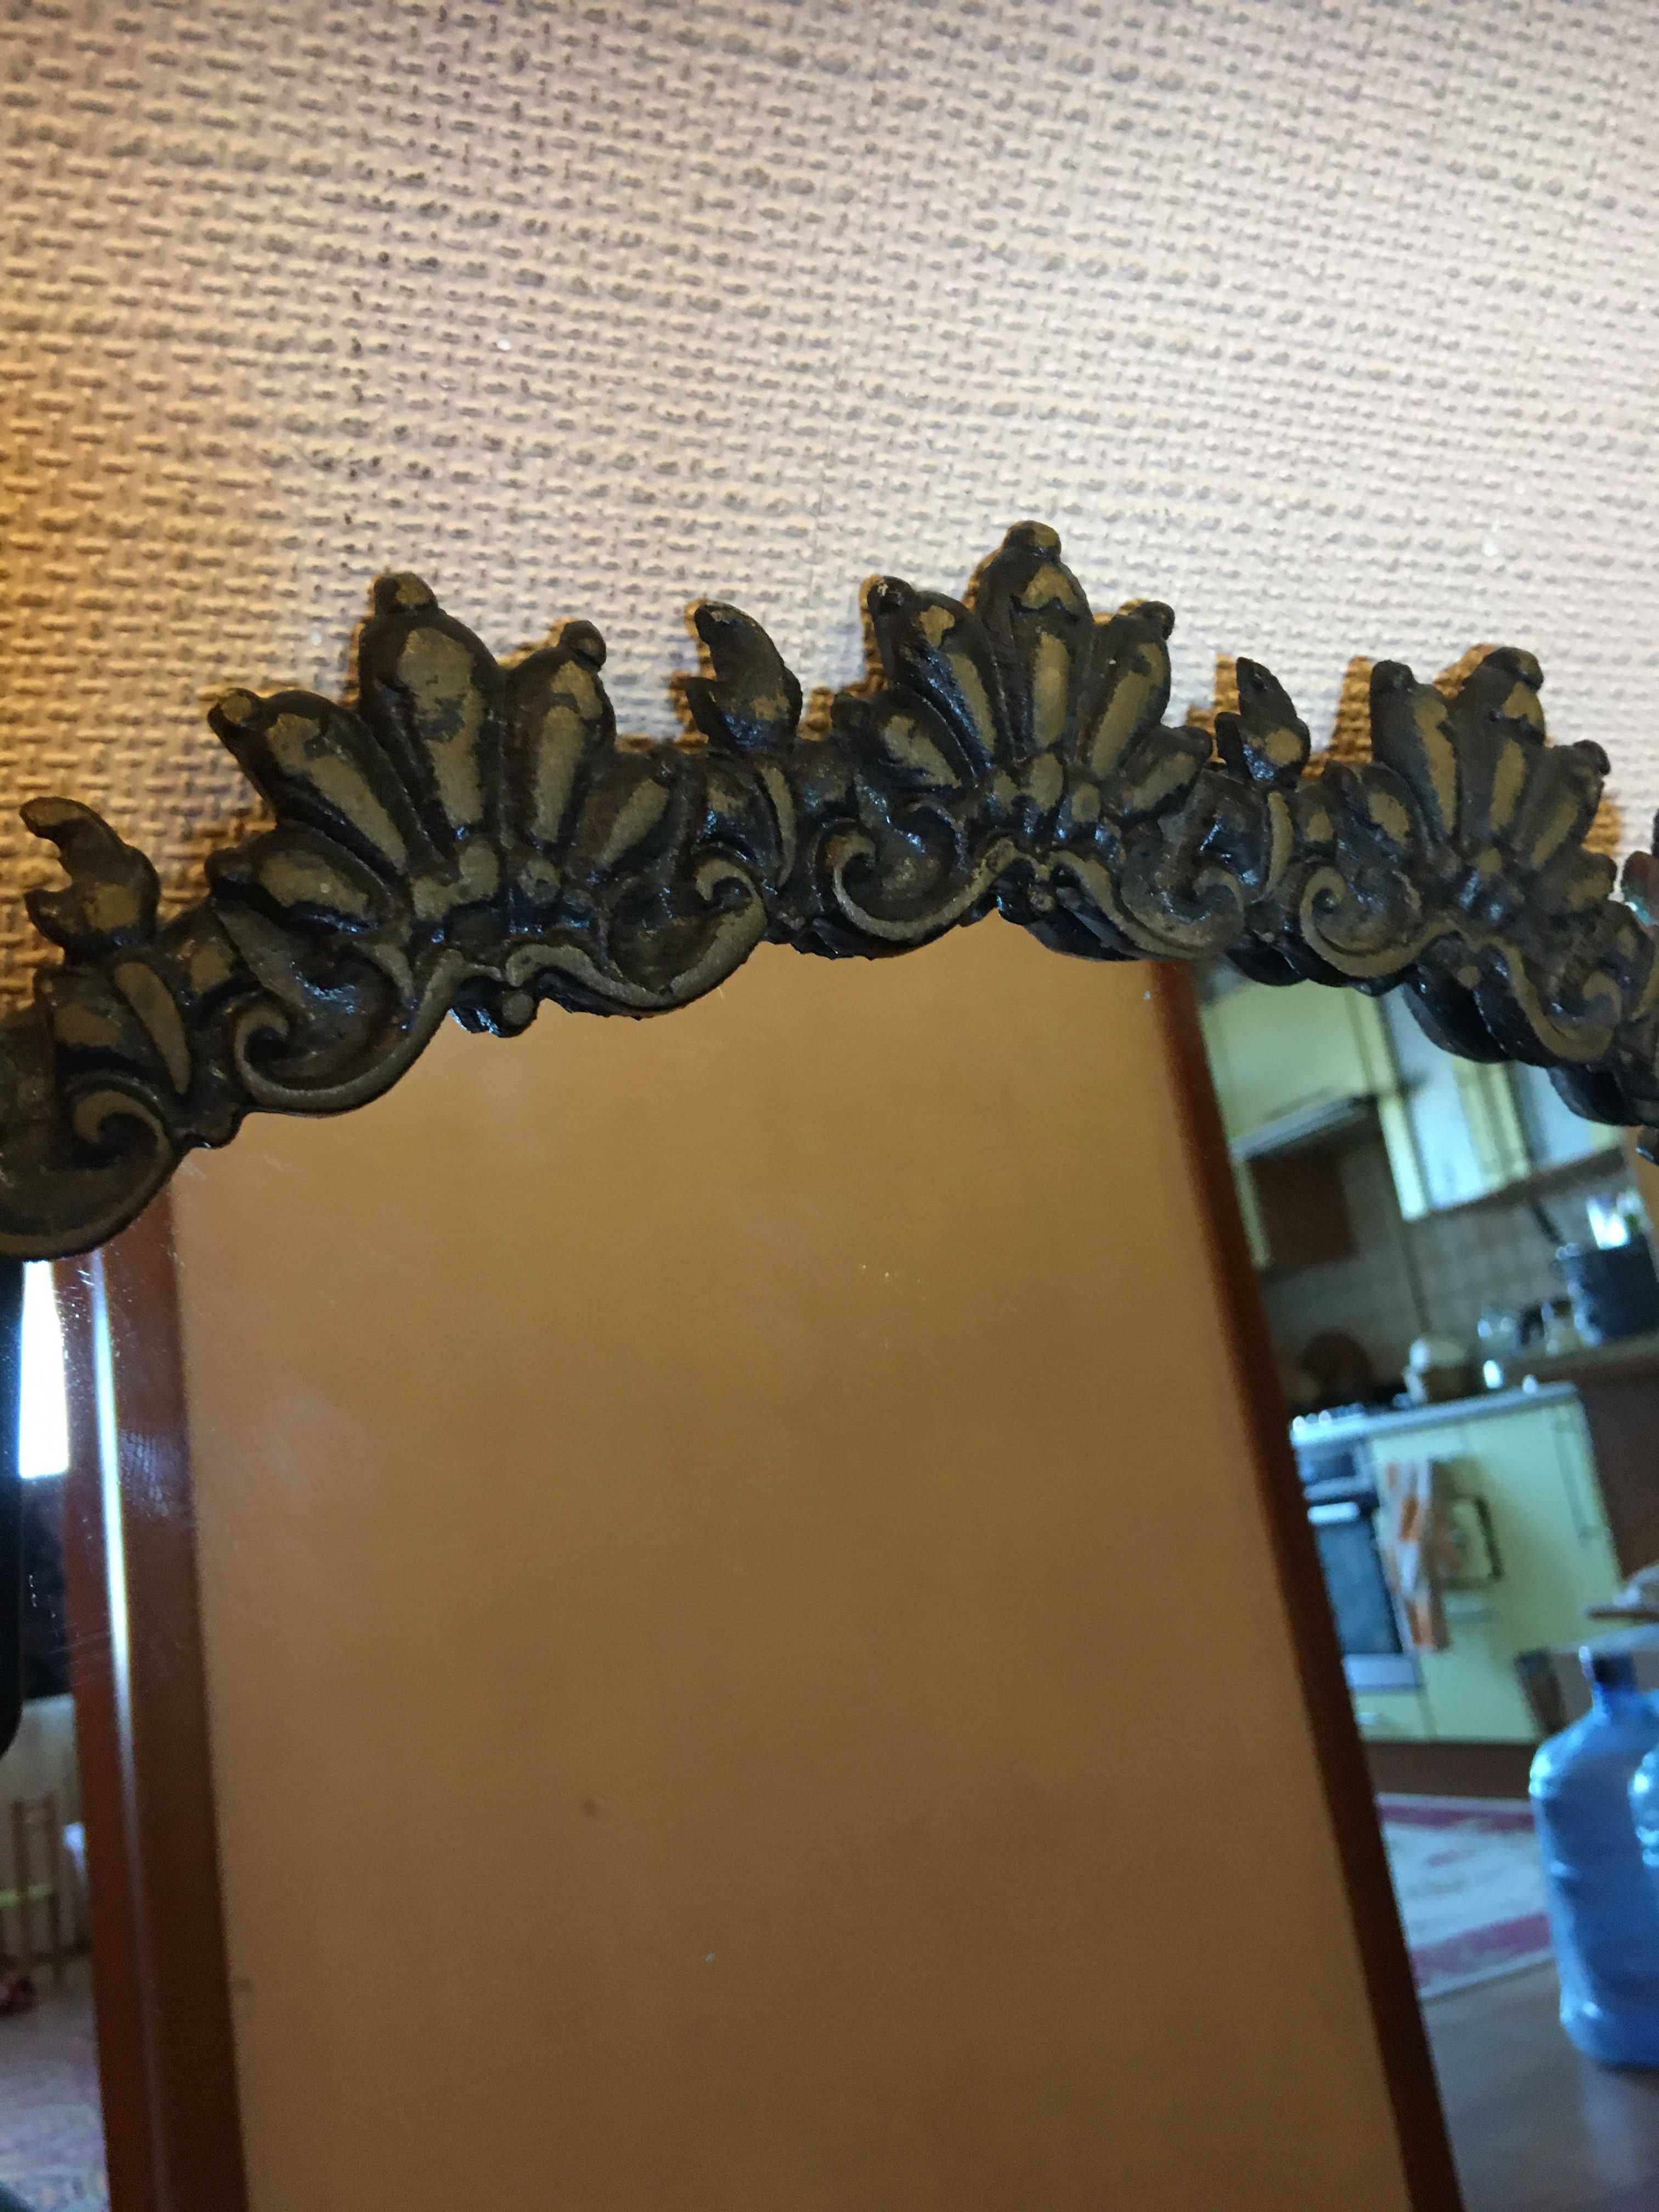 Новое зеркало в бронзовой раме.